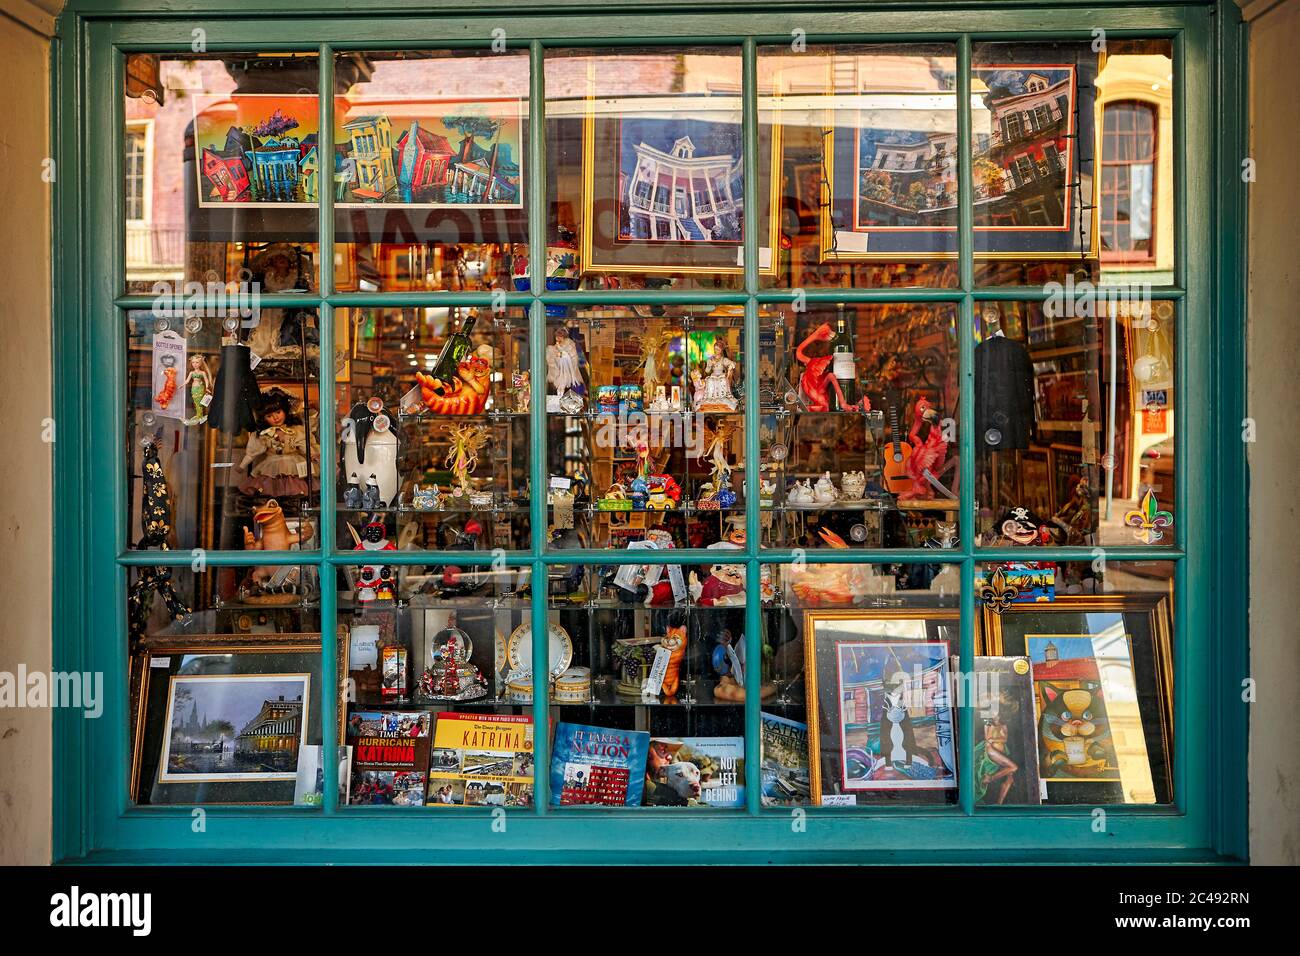 Des souvenirs sont présentés dans une fenêtre de la boutique de cadeaux. Quartier français, la Nouvelle-Orléans, Louisiane, États-Unis. Banque D'Images